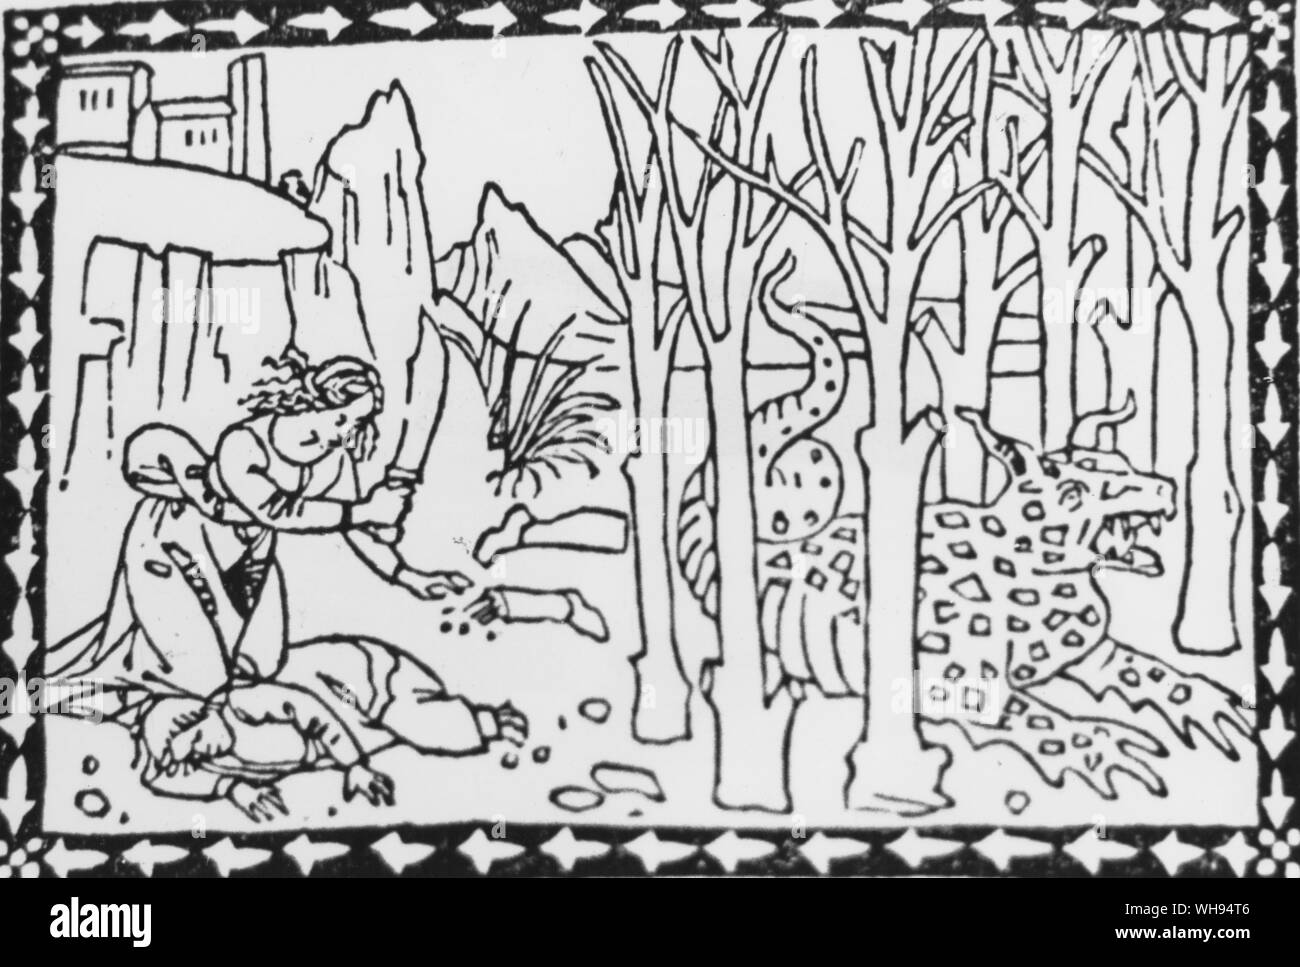 Fabelhafte Tiere und Drachen im Überfluss in die Holzschnitte der ersten gedruckten Bücher. Aus Fior di Virtu 1491 stammt der Basilisk, Symbol der Grausamkeit, giftige, Versengen der Erde mit ihren Atem. Leonardo beschreibt es mehr als einmal und es scheint enorm, in der Größe zu variieren. Stockfoto